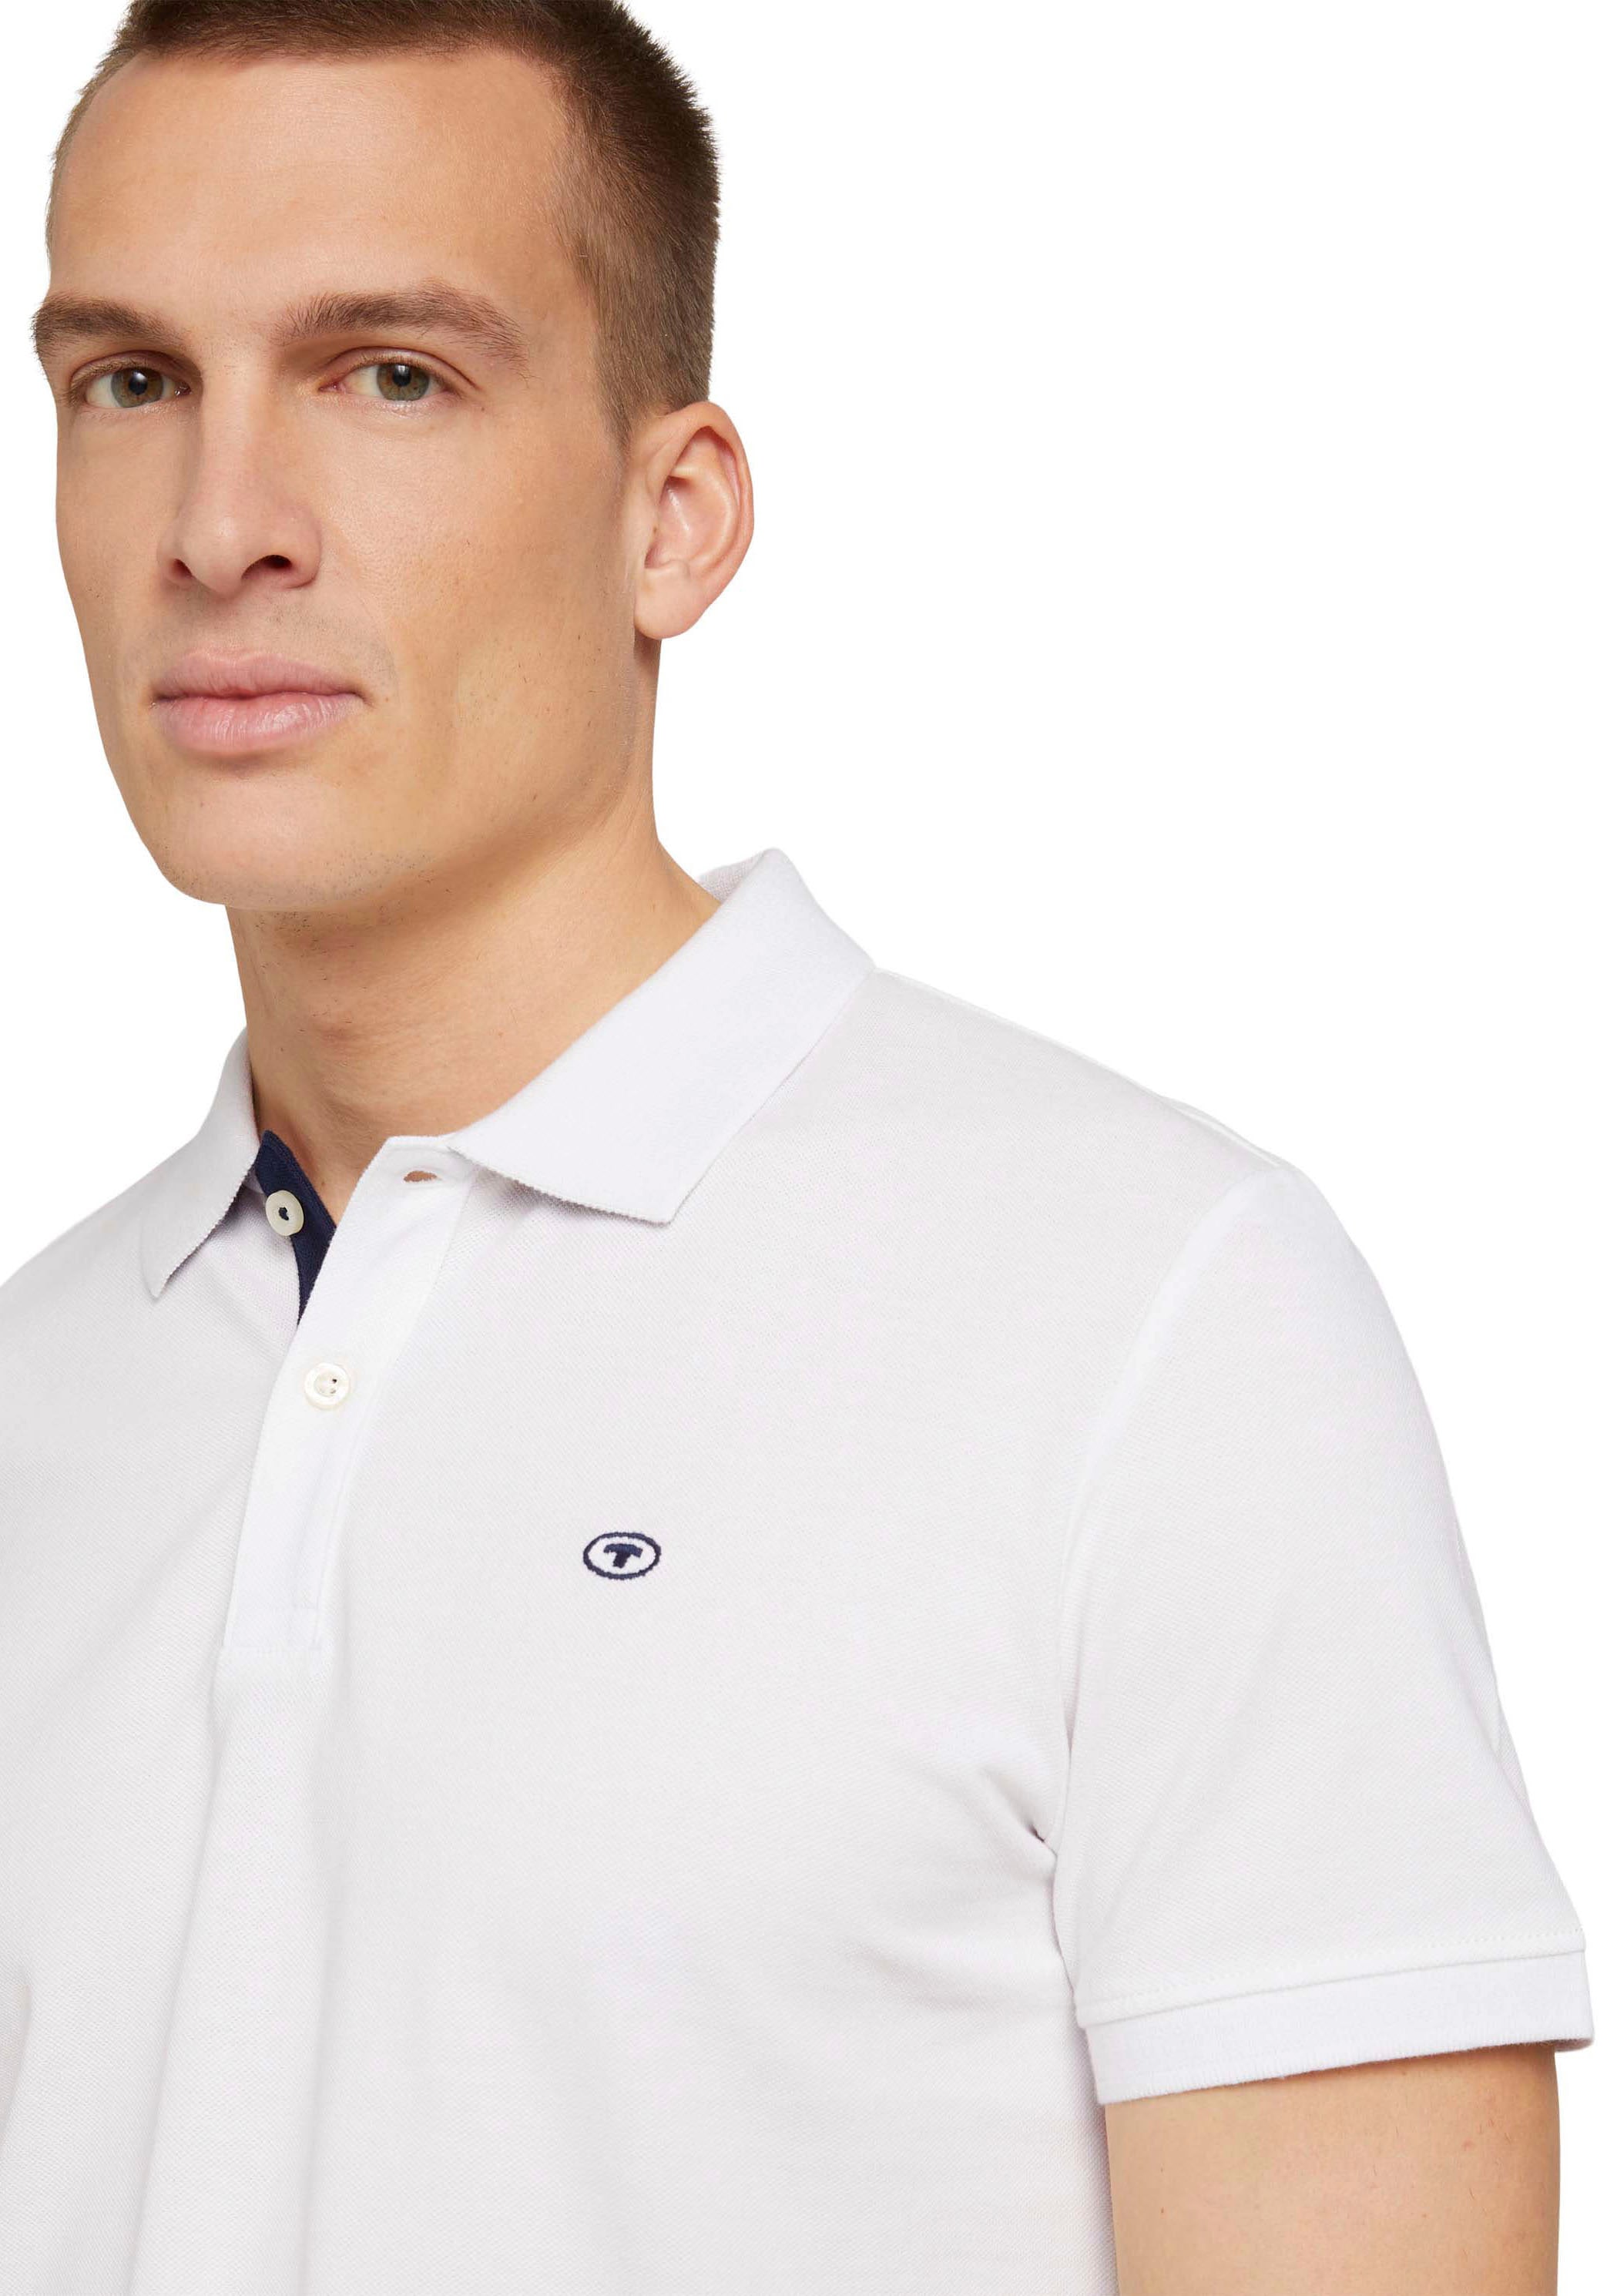 Poloshirt, bei Knopfleiste TOM und kleinem ♕ kontrastfarbener Logo mit TAILOR